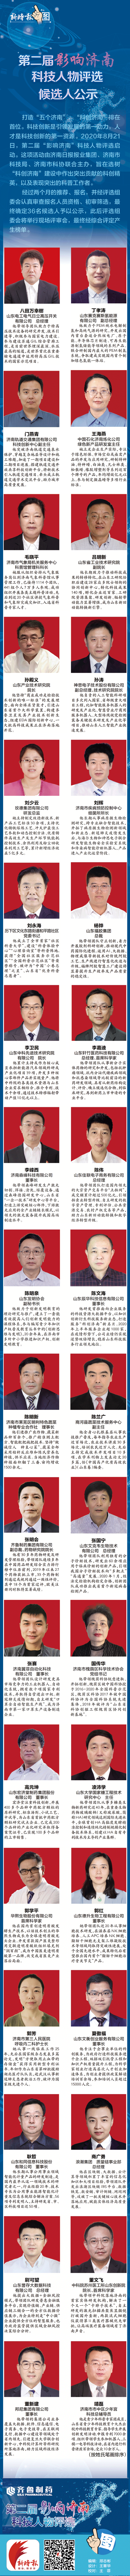 第二届“影响济南”科技人物评选候选人公示